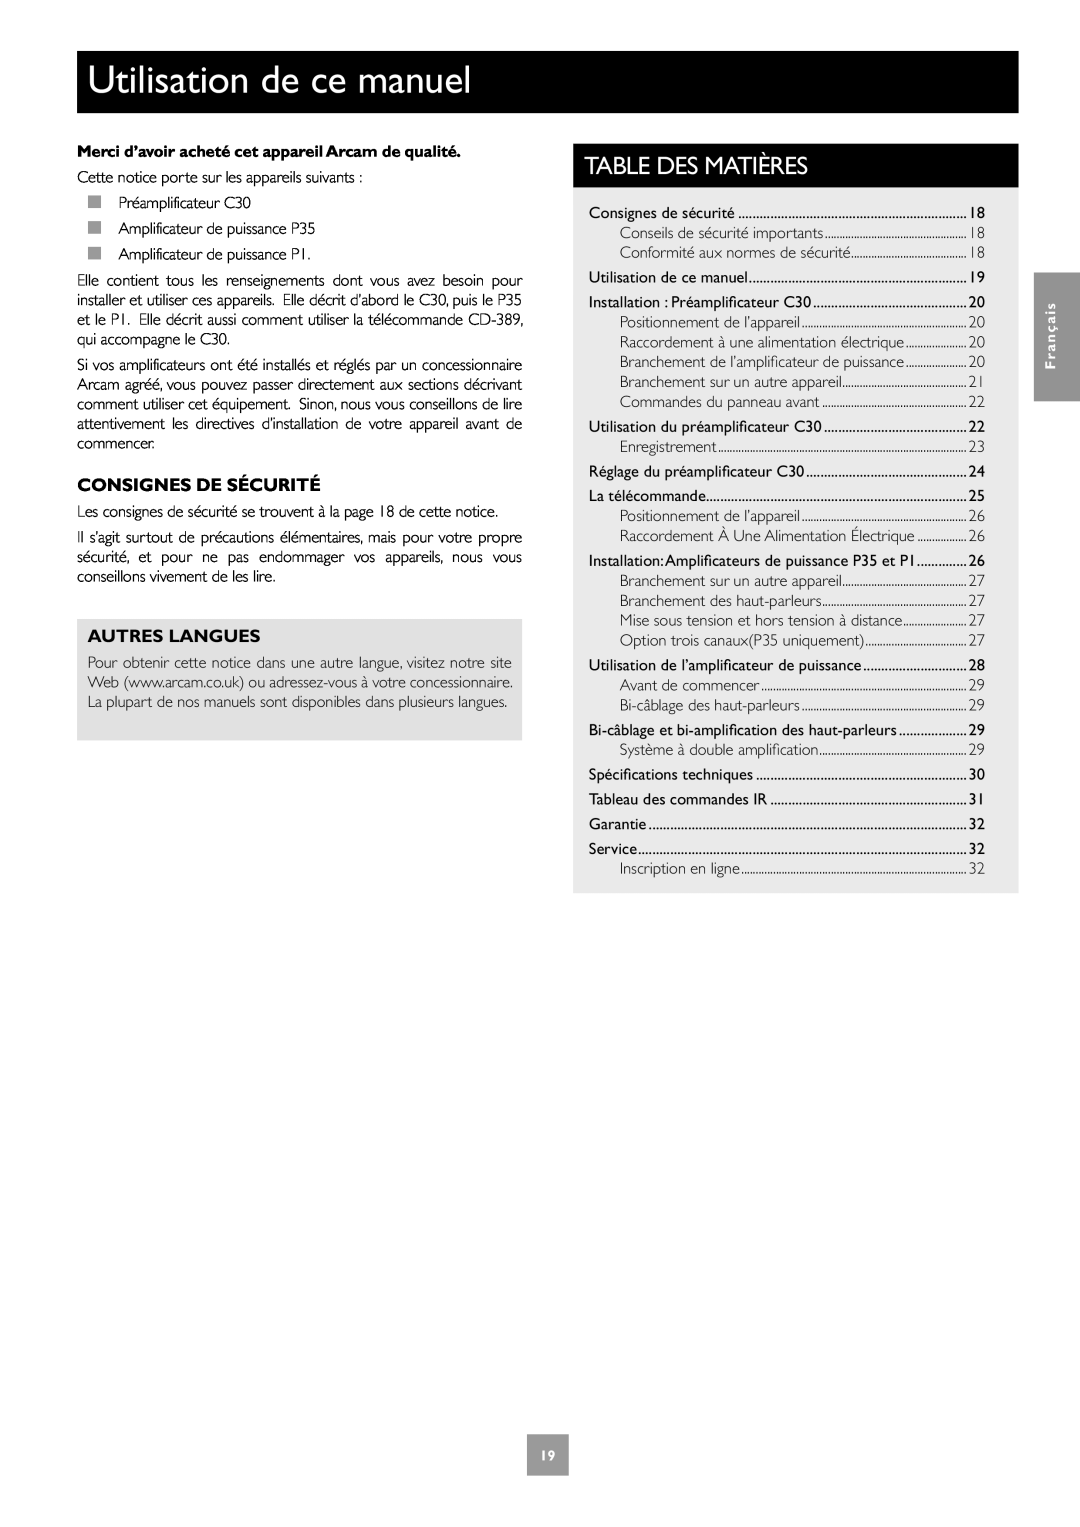 Arcam P1, P35, C30 manual Utilisation de ce manuel, Consignes De Sécurité, Autres Langues, Table Des Matières, Français 